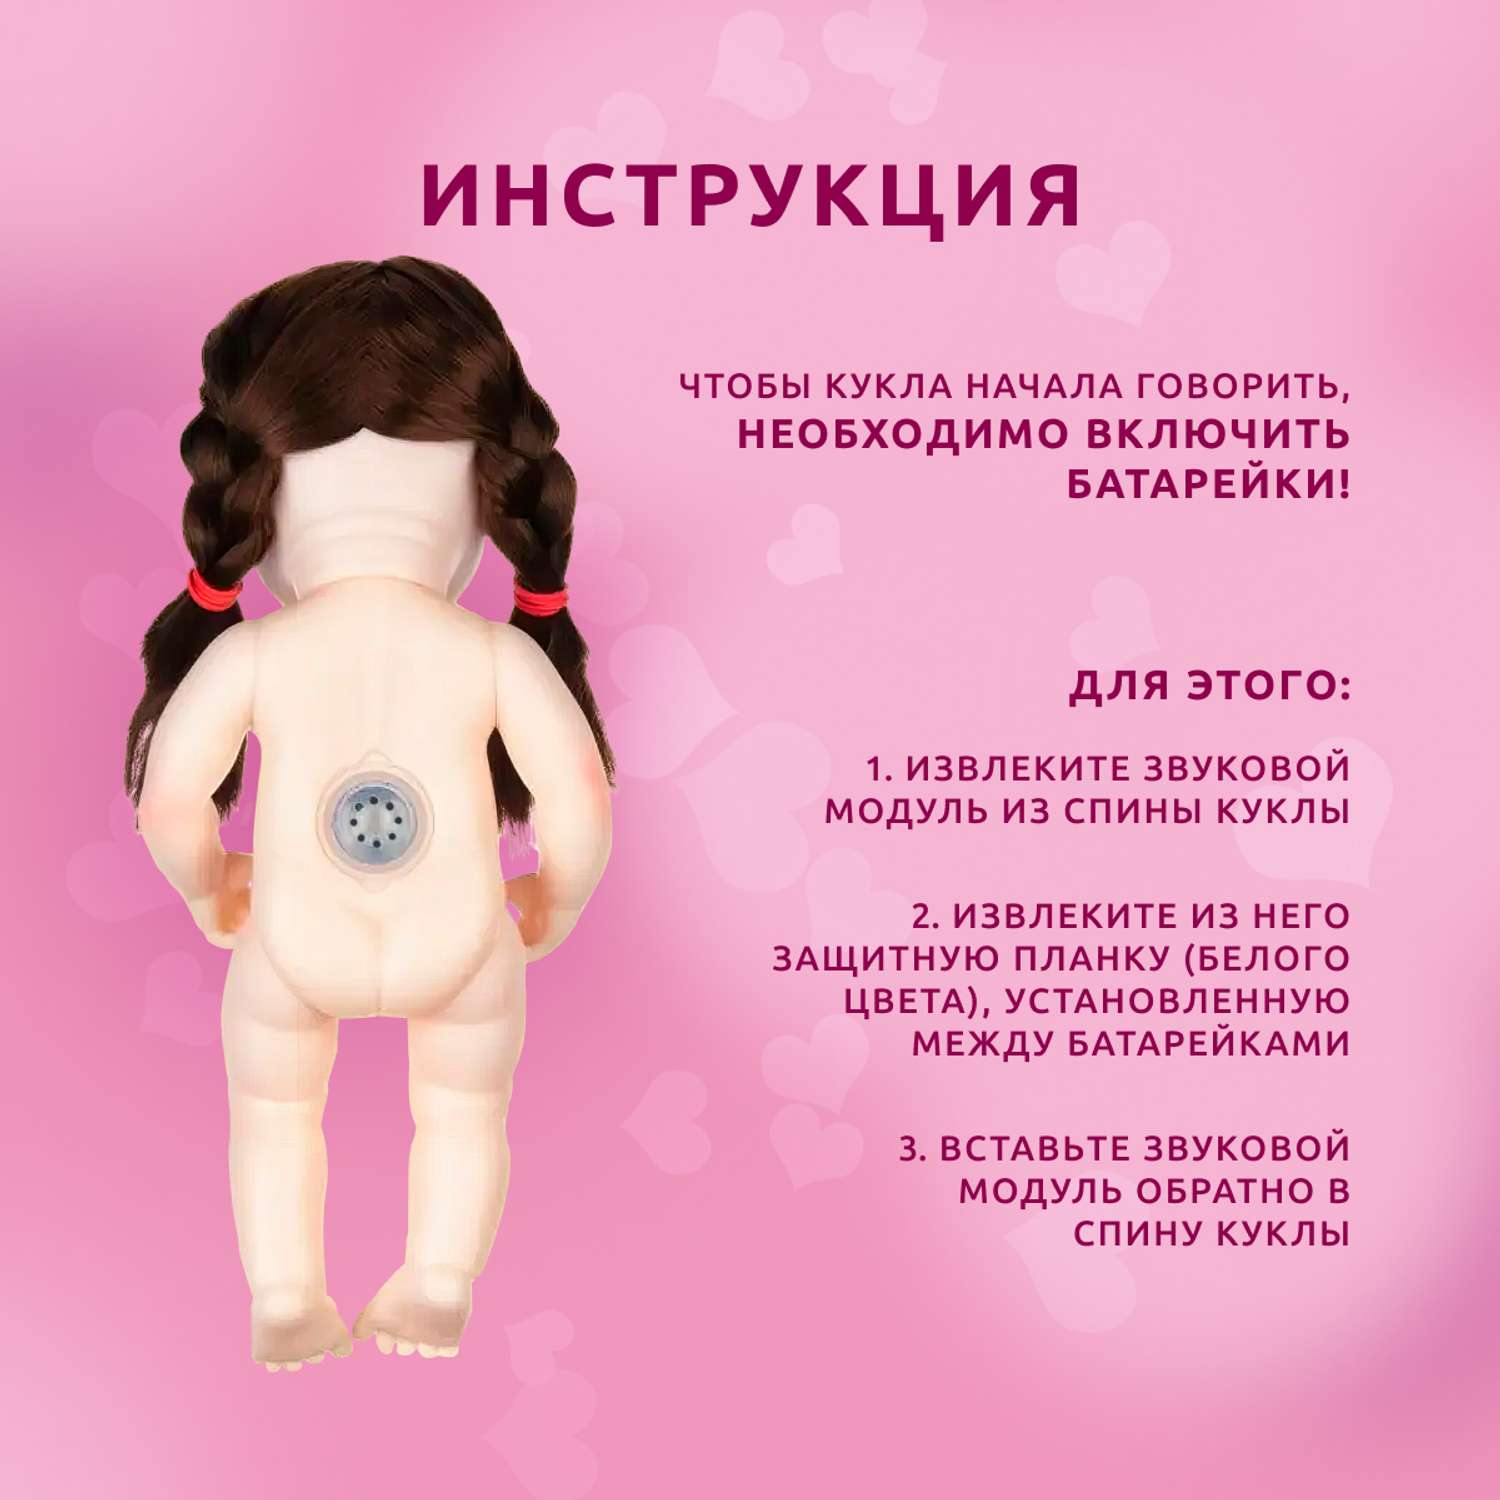 Кукла Реборн QA BABY Элен девочка интерактивная Пупс набор игрушки для ванной для девочки 38 см 3810 - фото 13